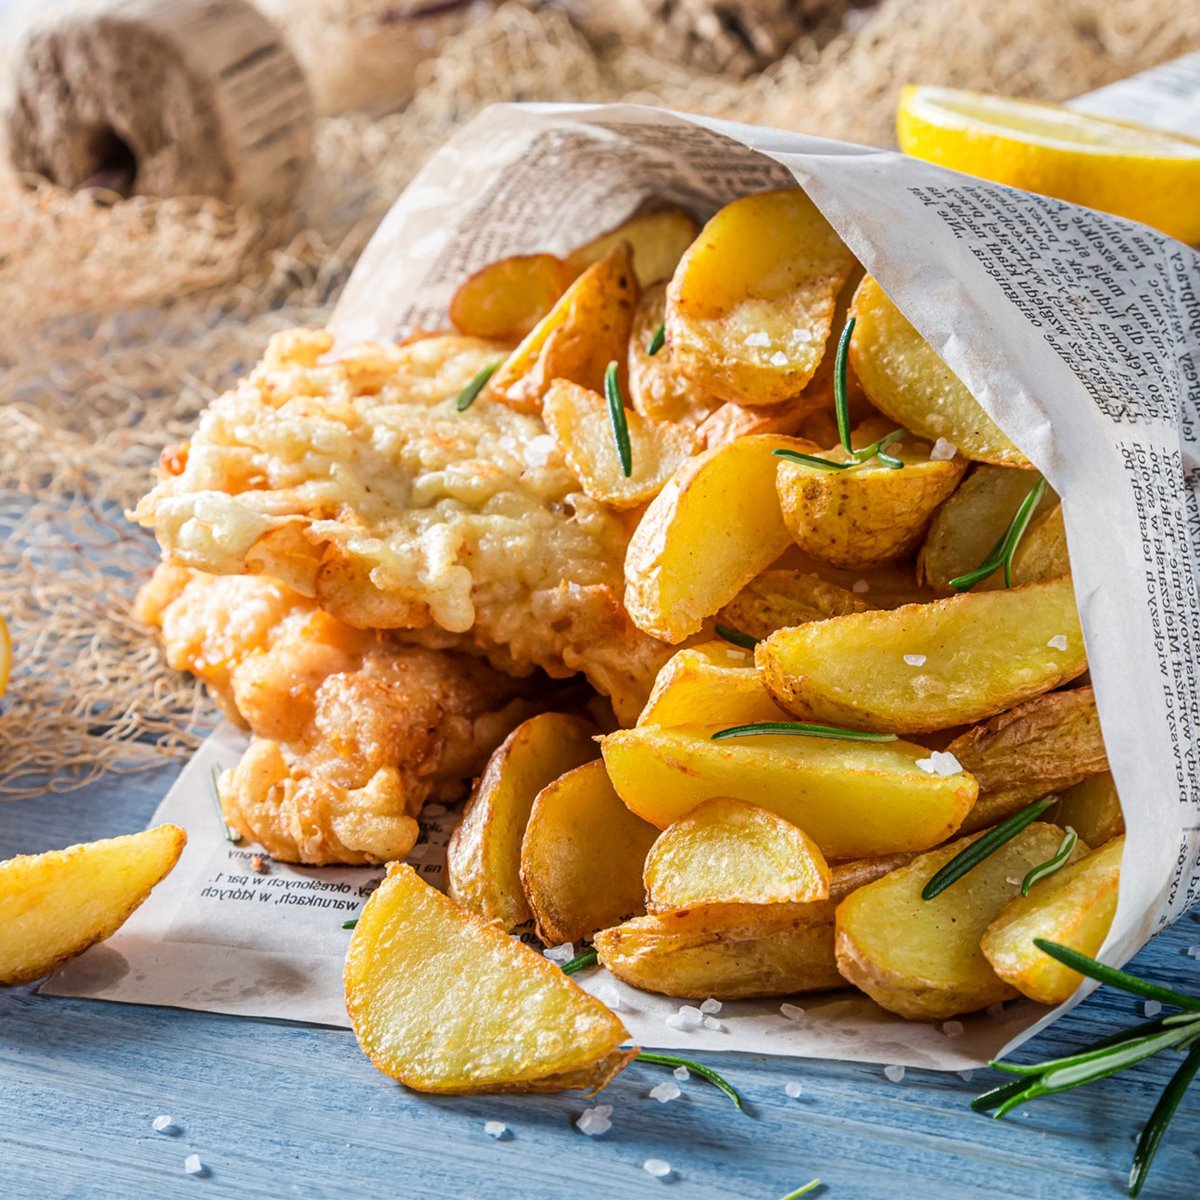 Fish&chips, la auténtica receta del plato más famoso de Inglaterra